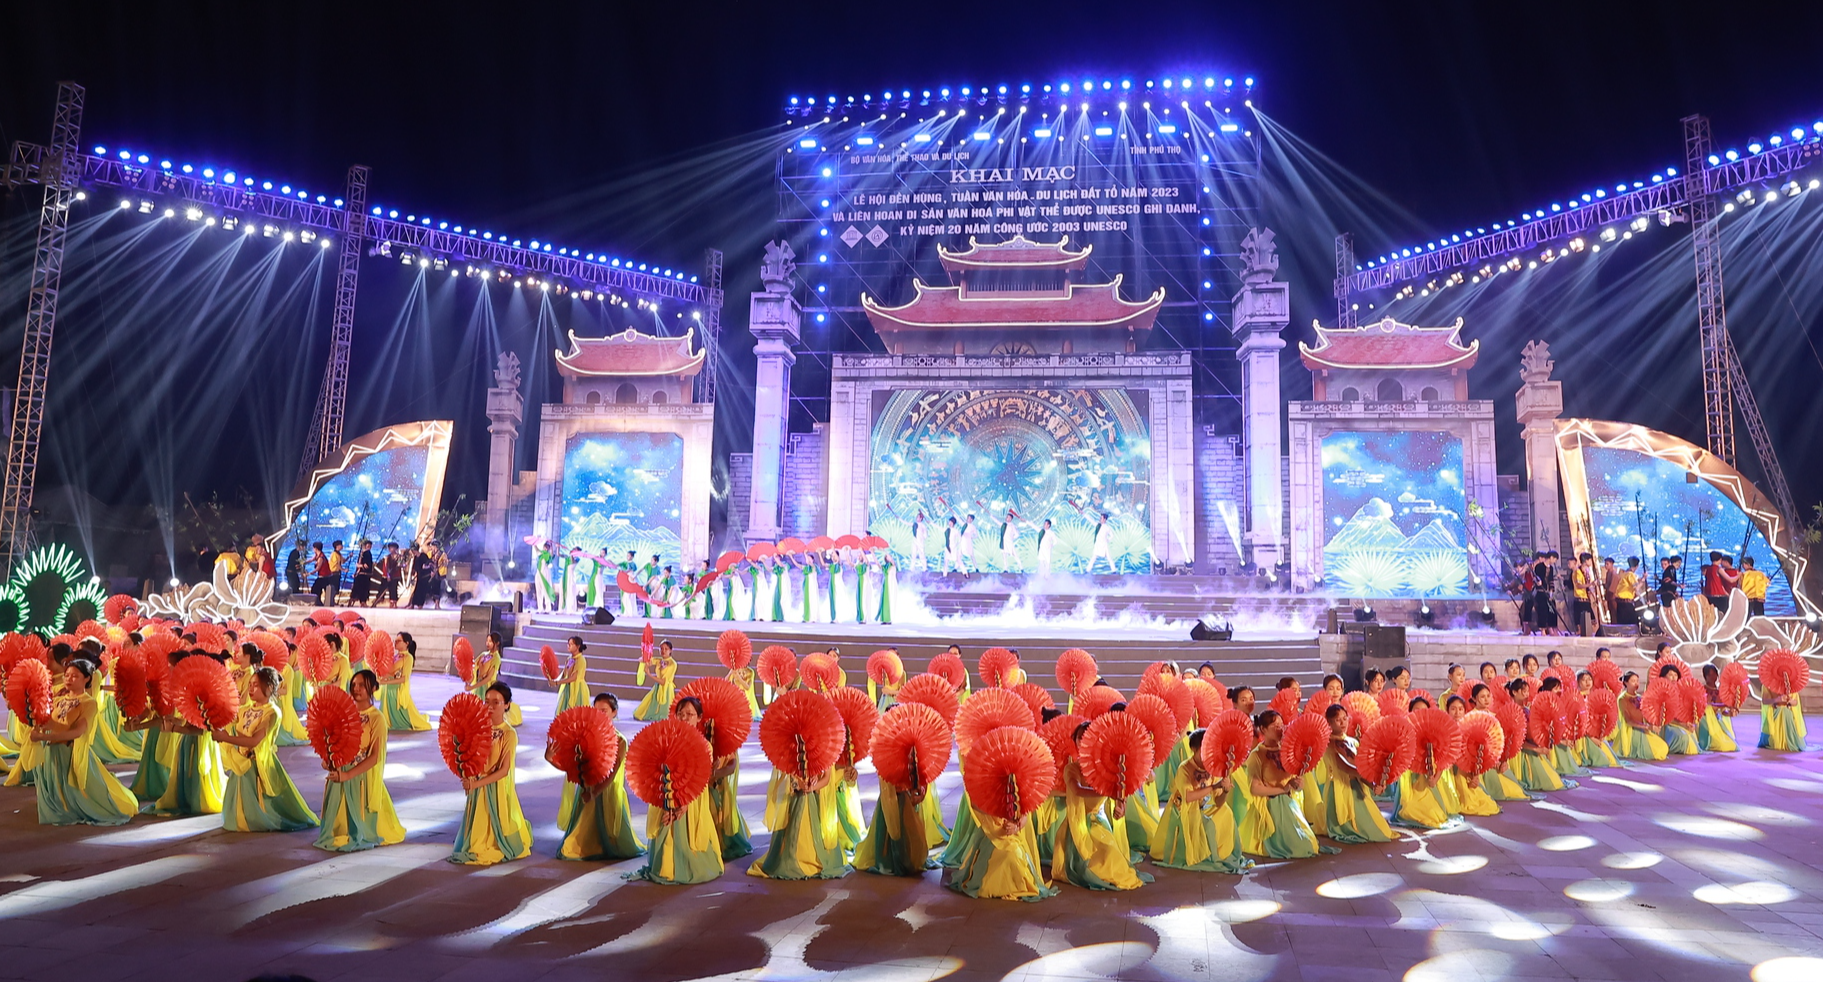 Bật mí kịch bản chương trình nghệ thuật Khai mạc Lễ hội Đền Hùng 2023 trước giờ G - Ảnh 1.